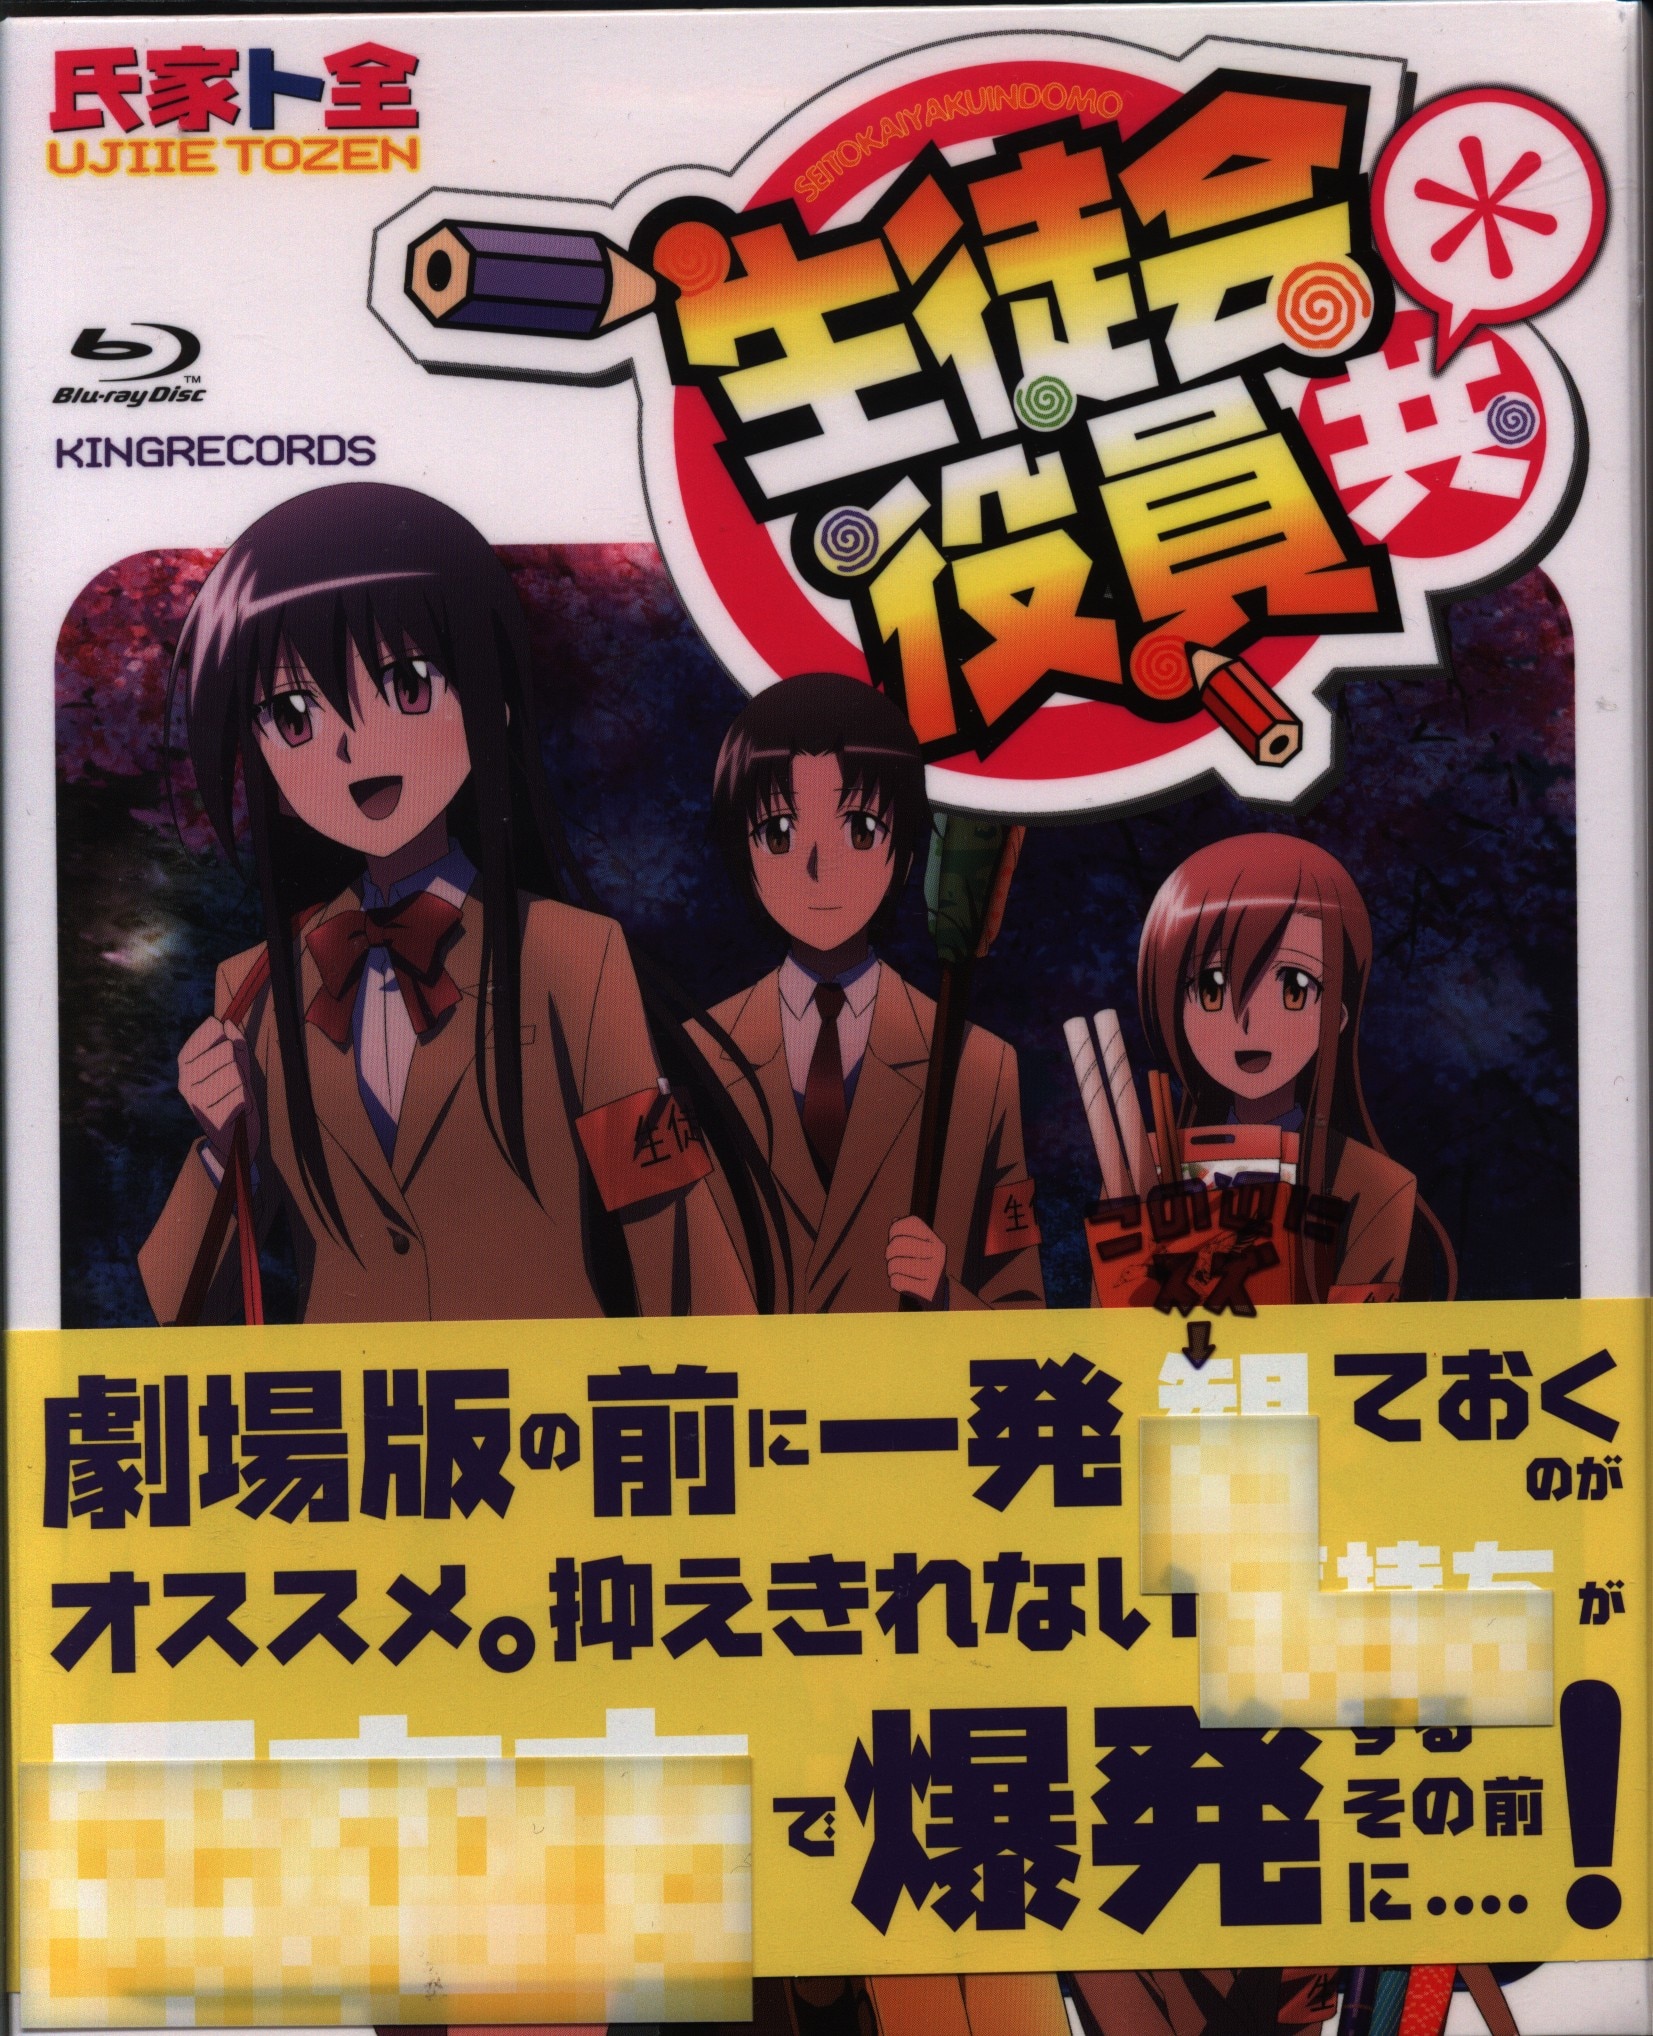 値引きする TVアニメ「生徒会役員共」 Blu-rayBOX Blu-ray blogs BOX 